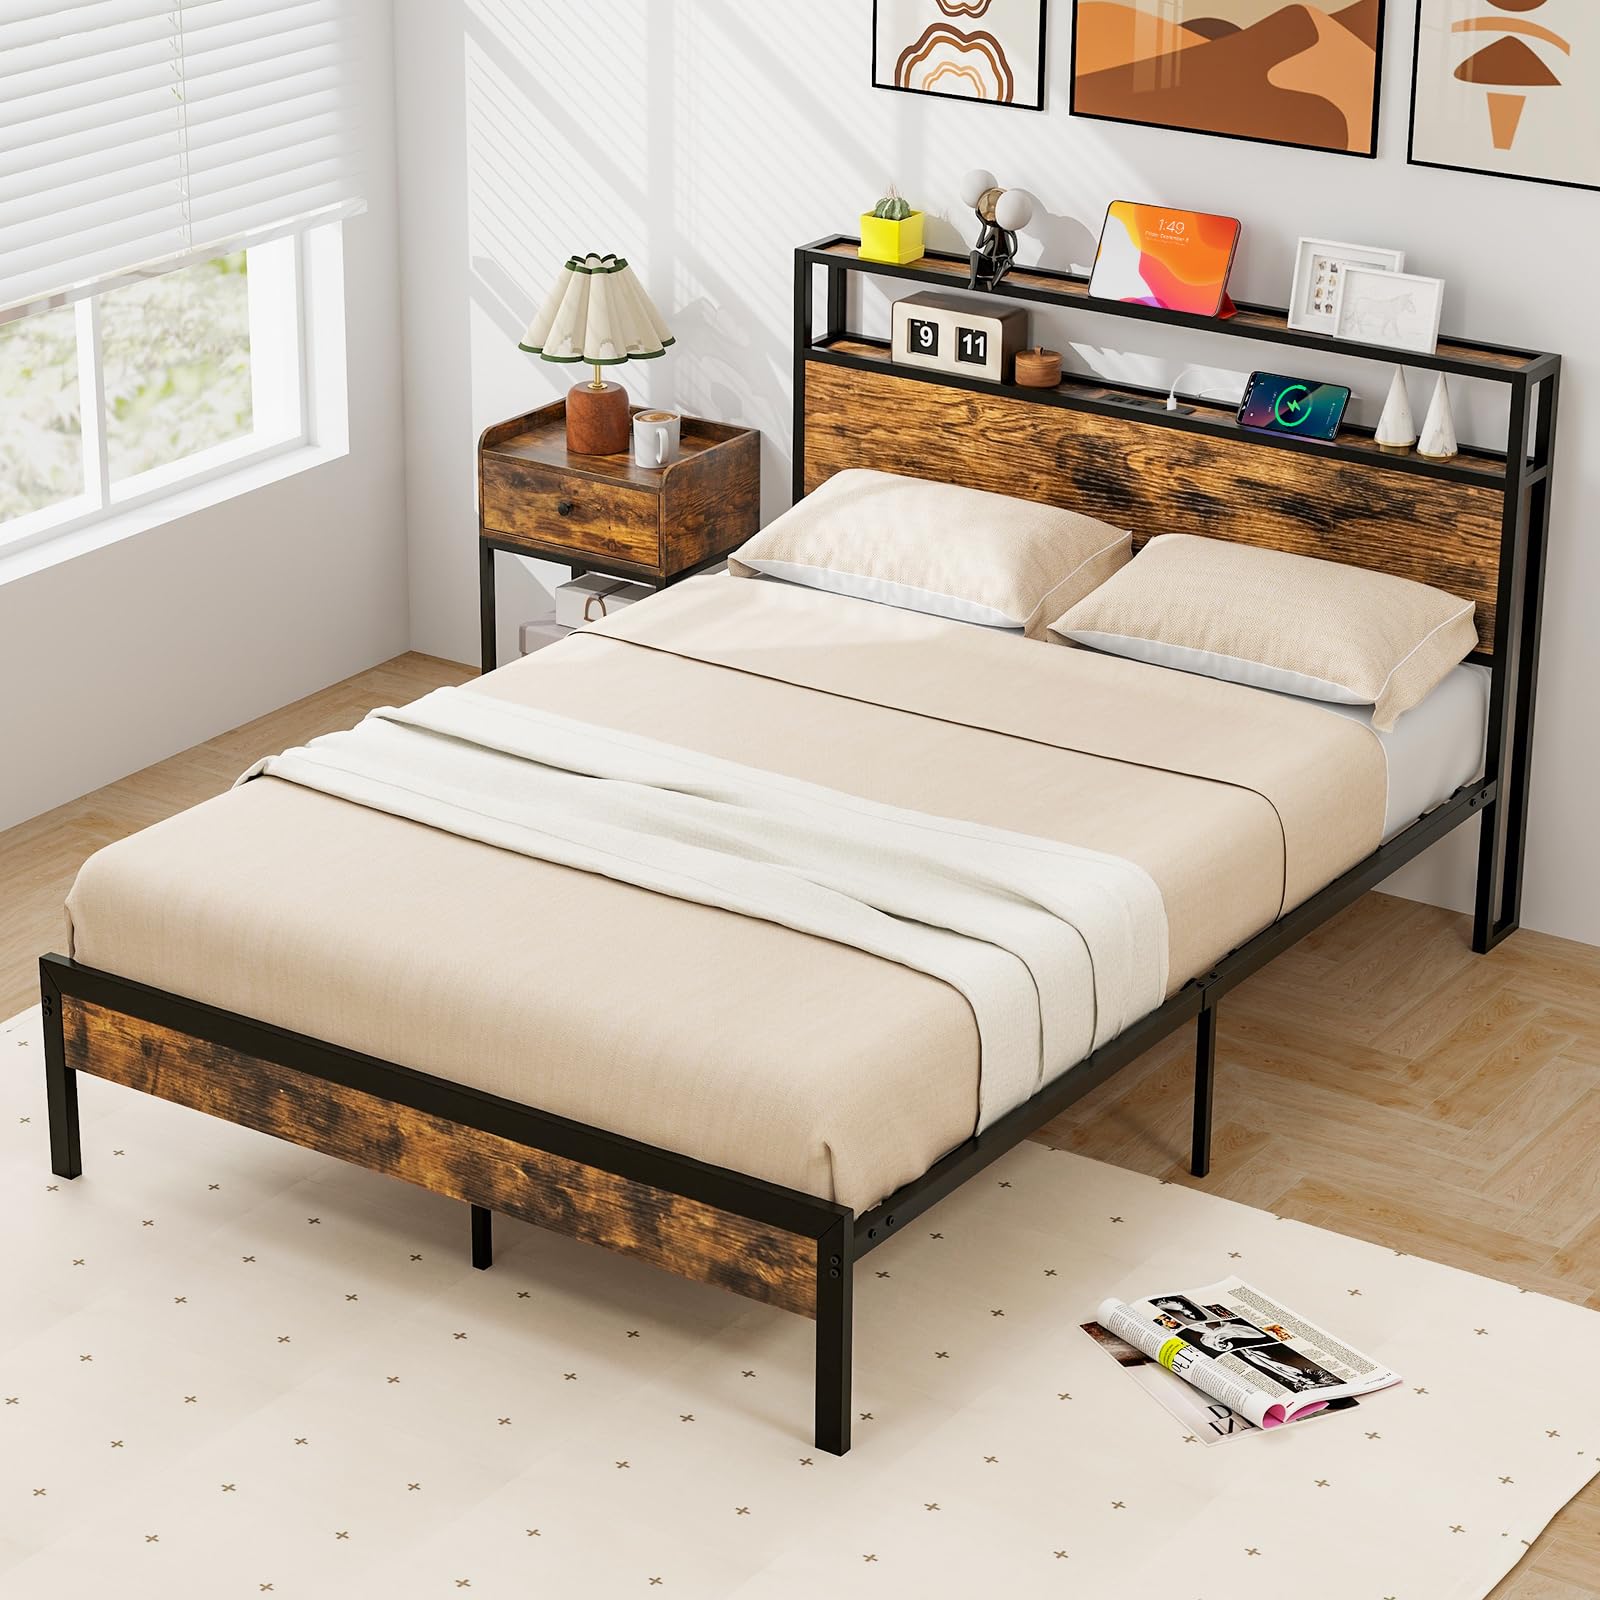 Giantex Full Size Bed Frame